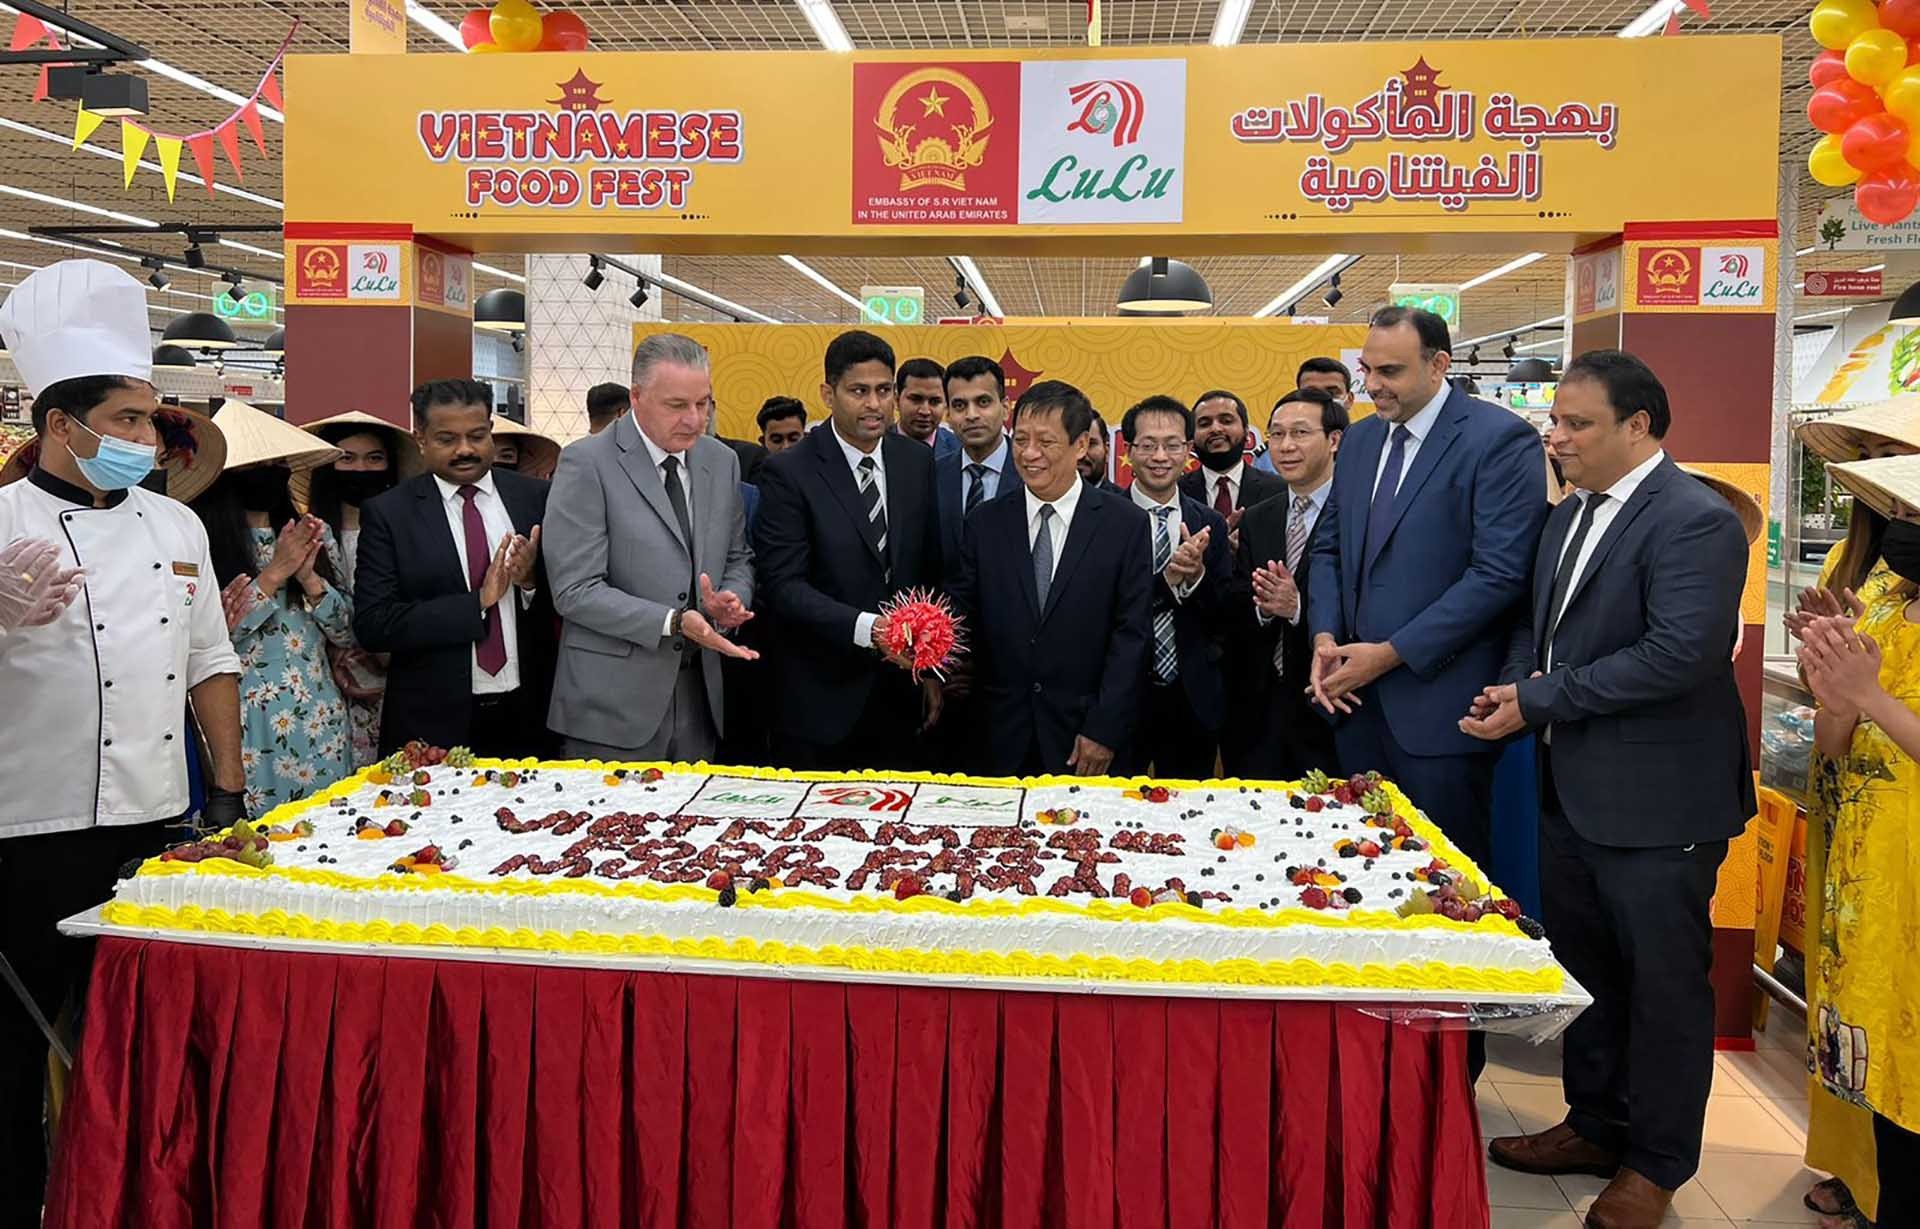 Đại sứ Nguyễn Mạnh Tuấn và các đại biểu khai mạc Lễ hội quảng bá nông sản và thực phẩm Việt Nam tại hệ thống siêu thị Lulu.